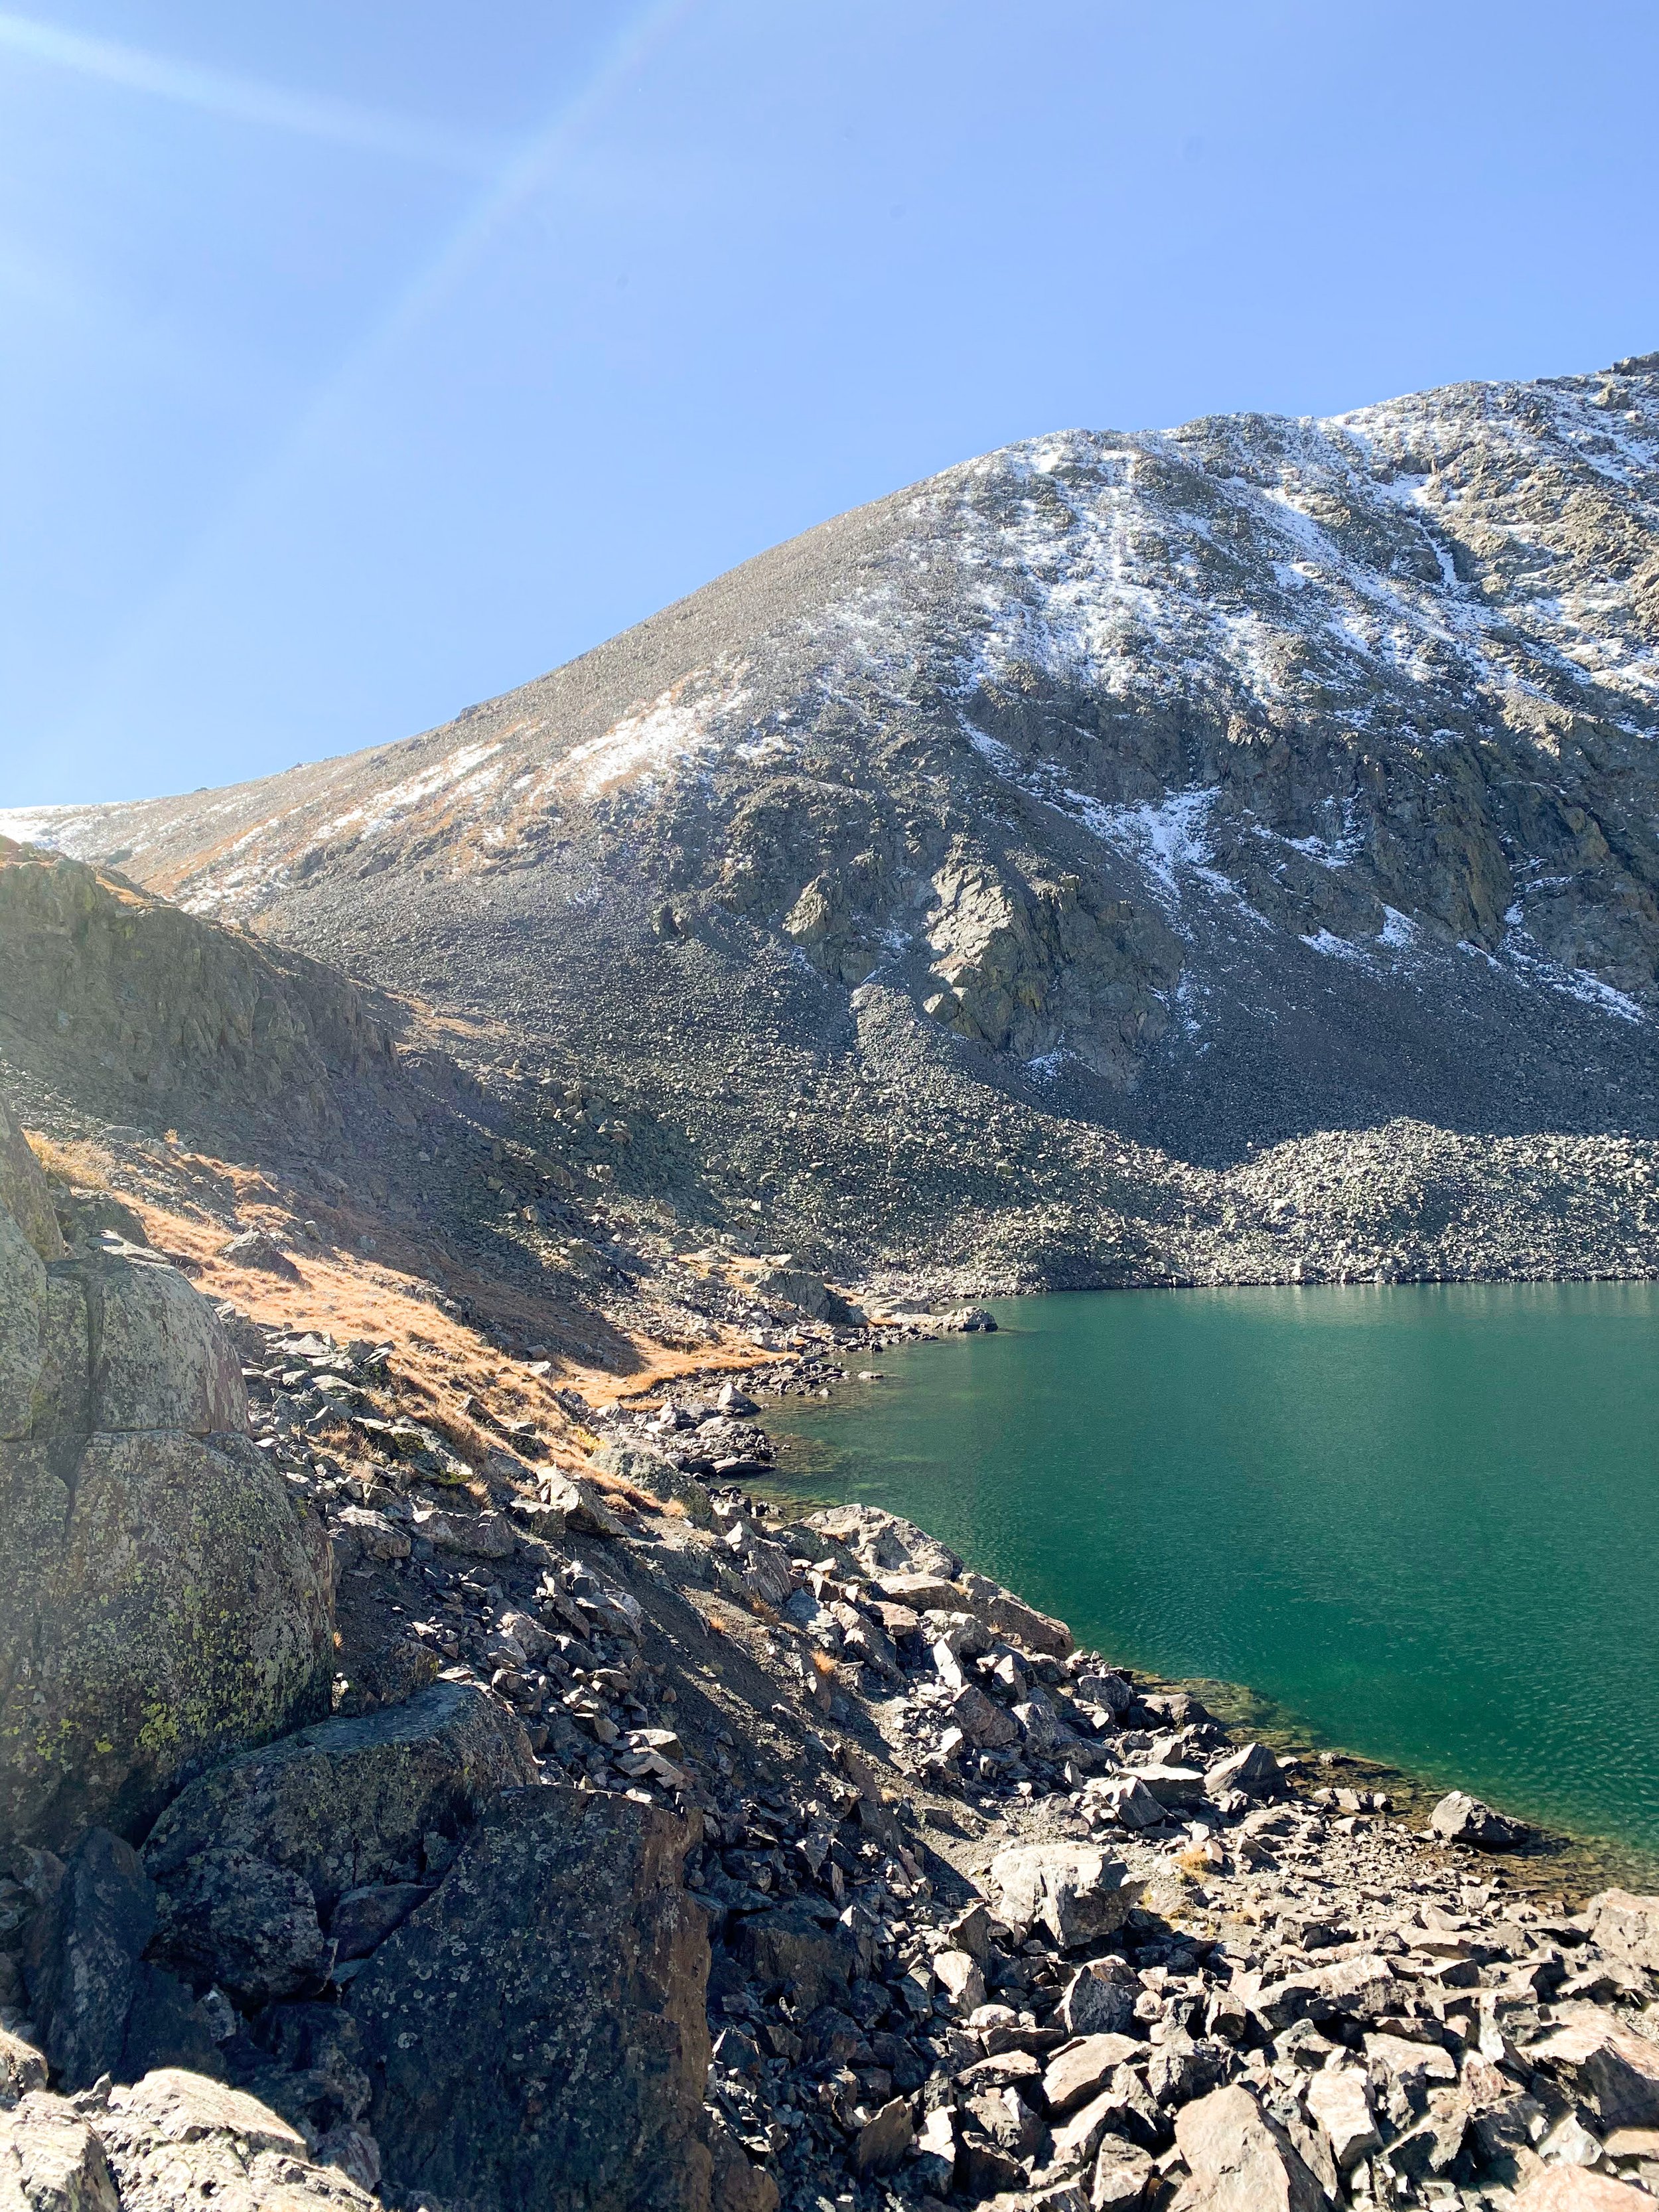 Mohawk Lakes via Spruce Creek Trail, Breckenridge Colorado